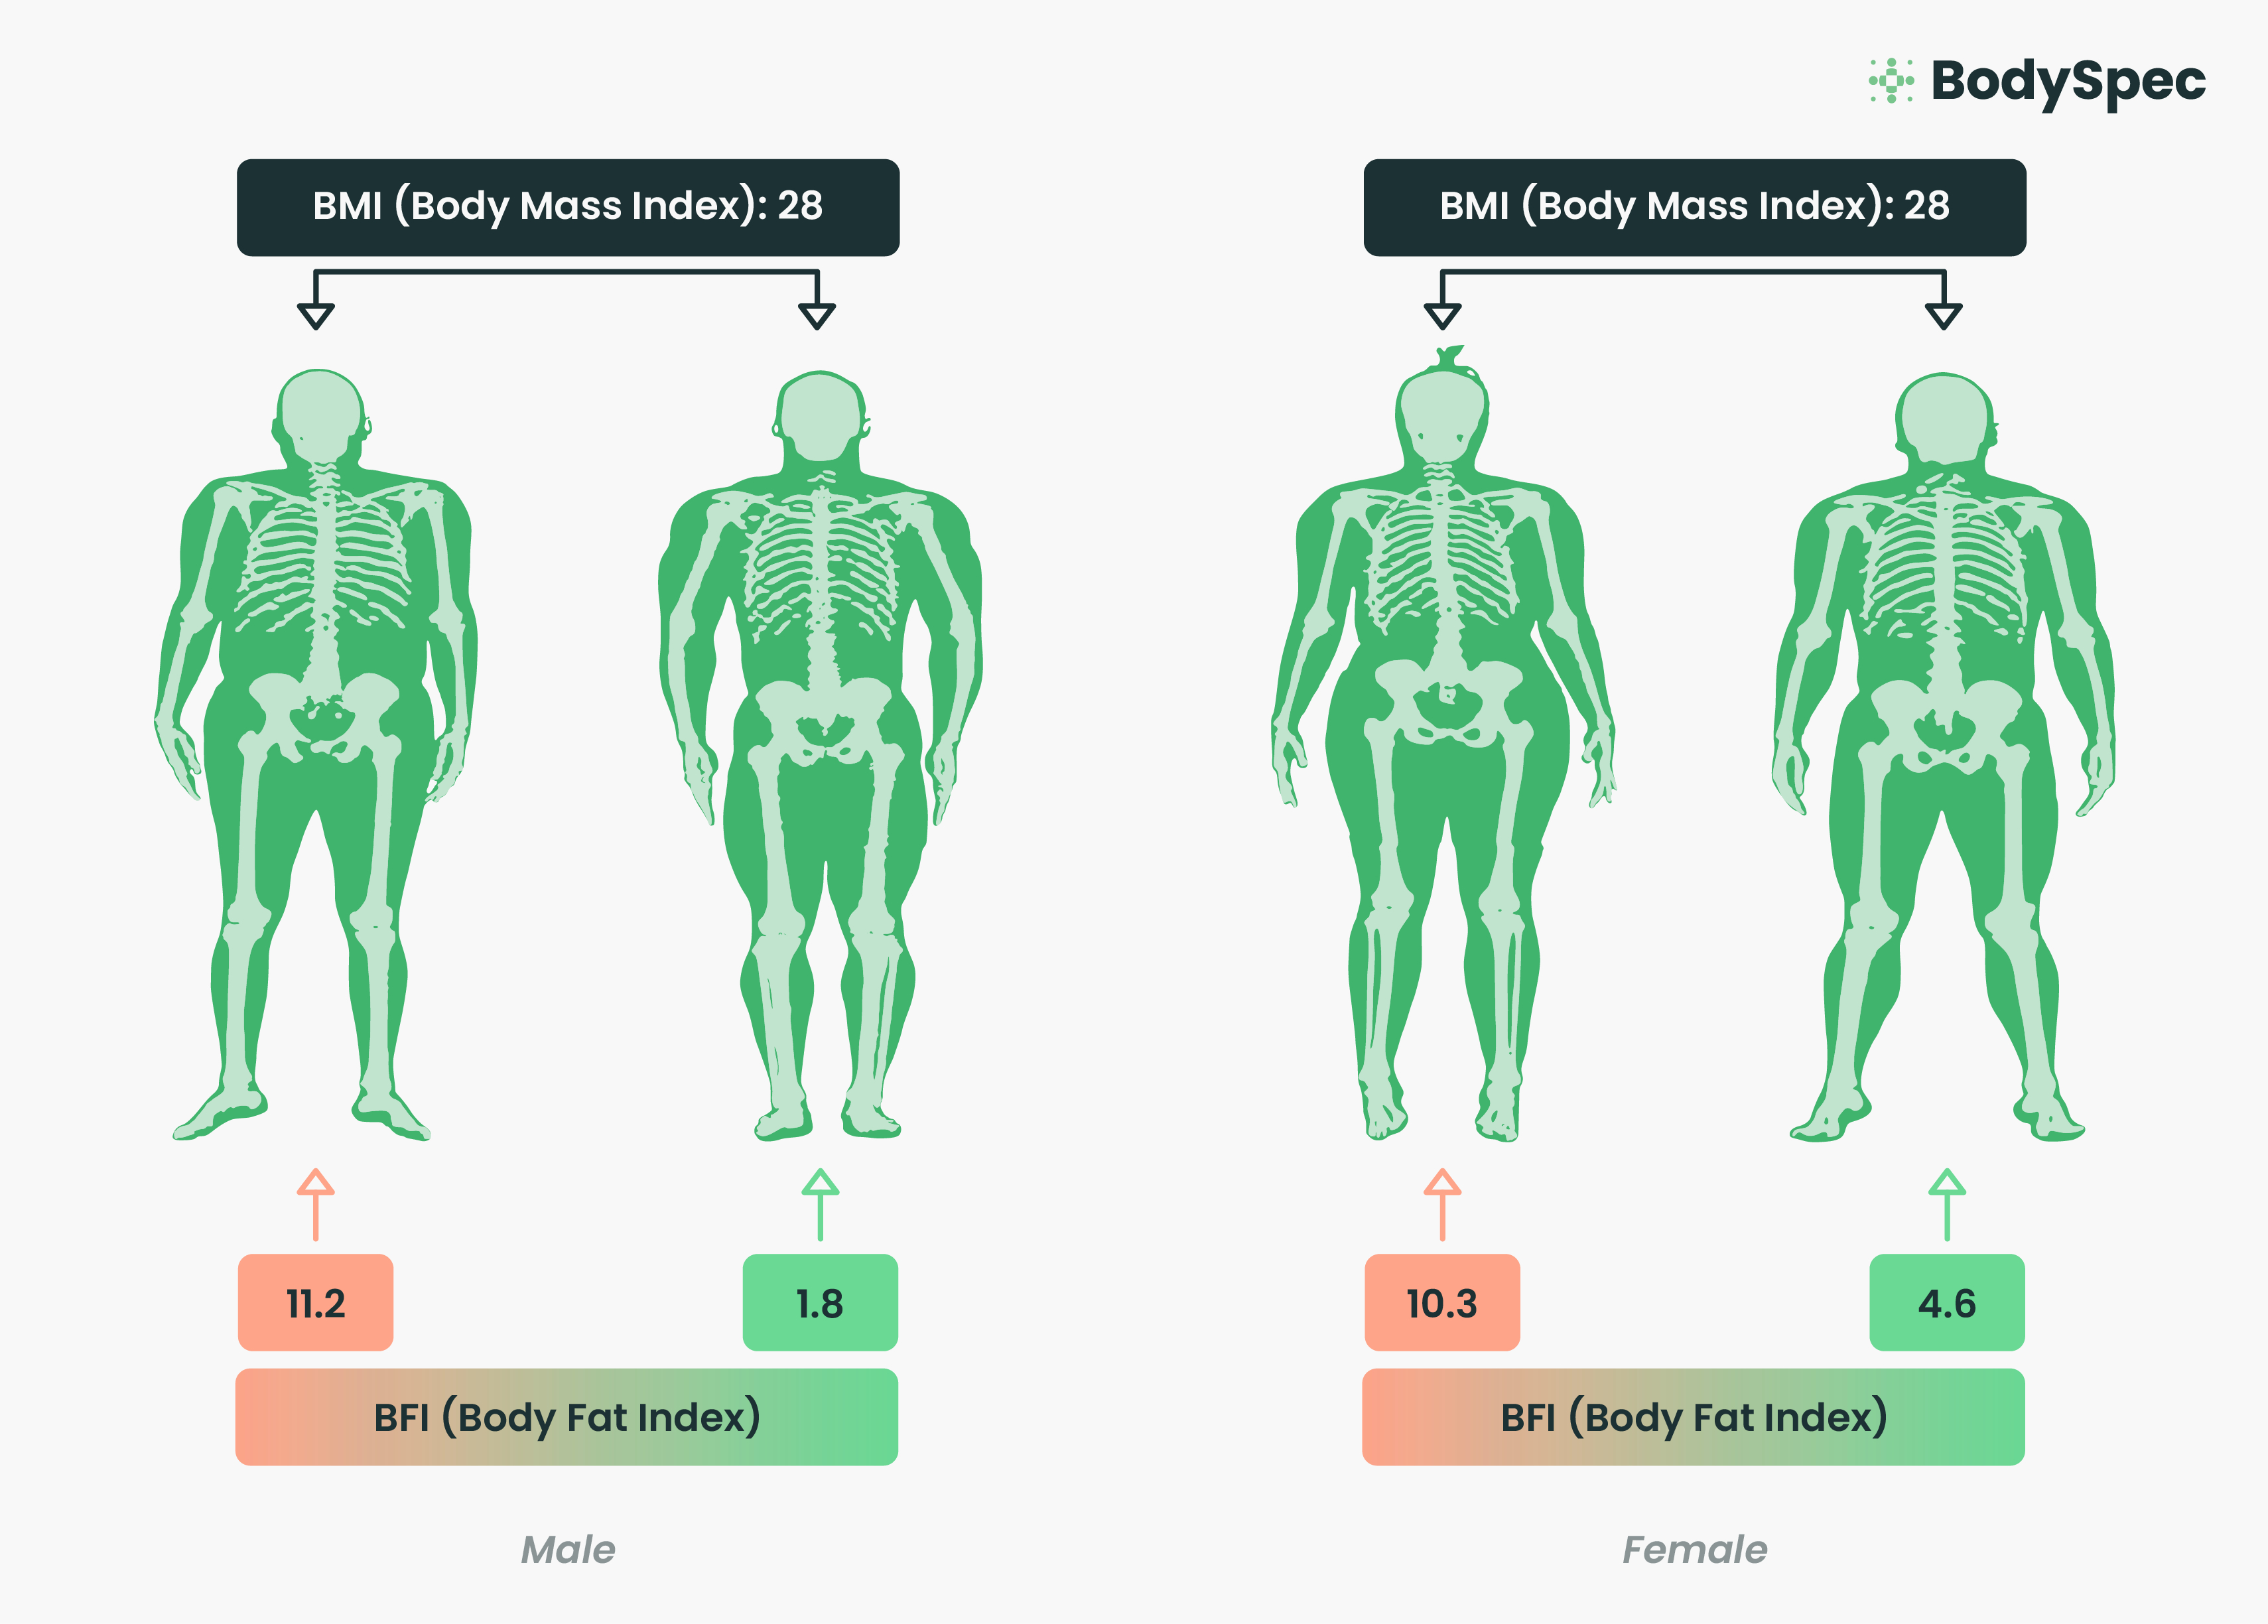 Baseline Body Fat Scale